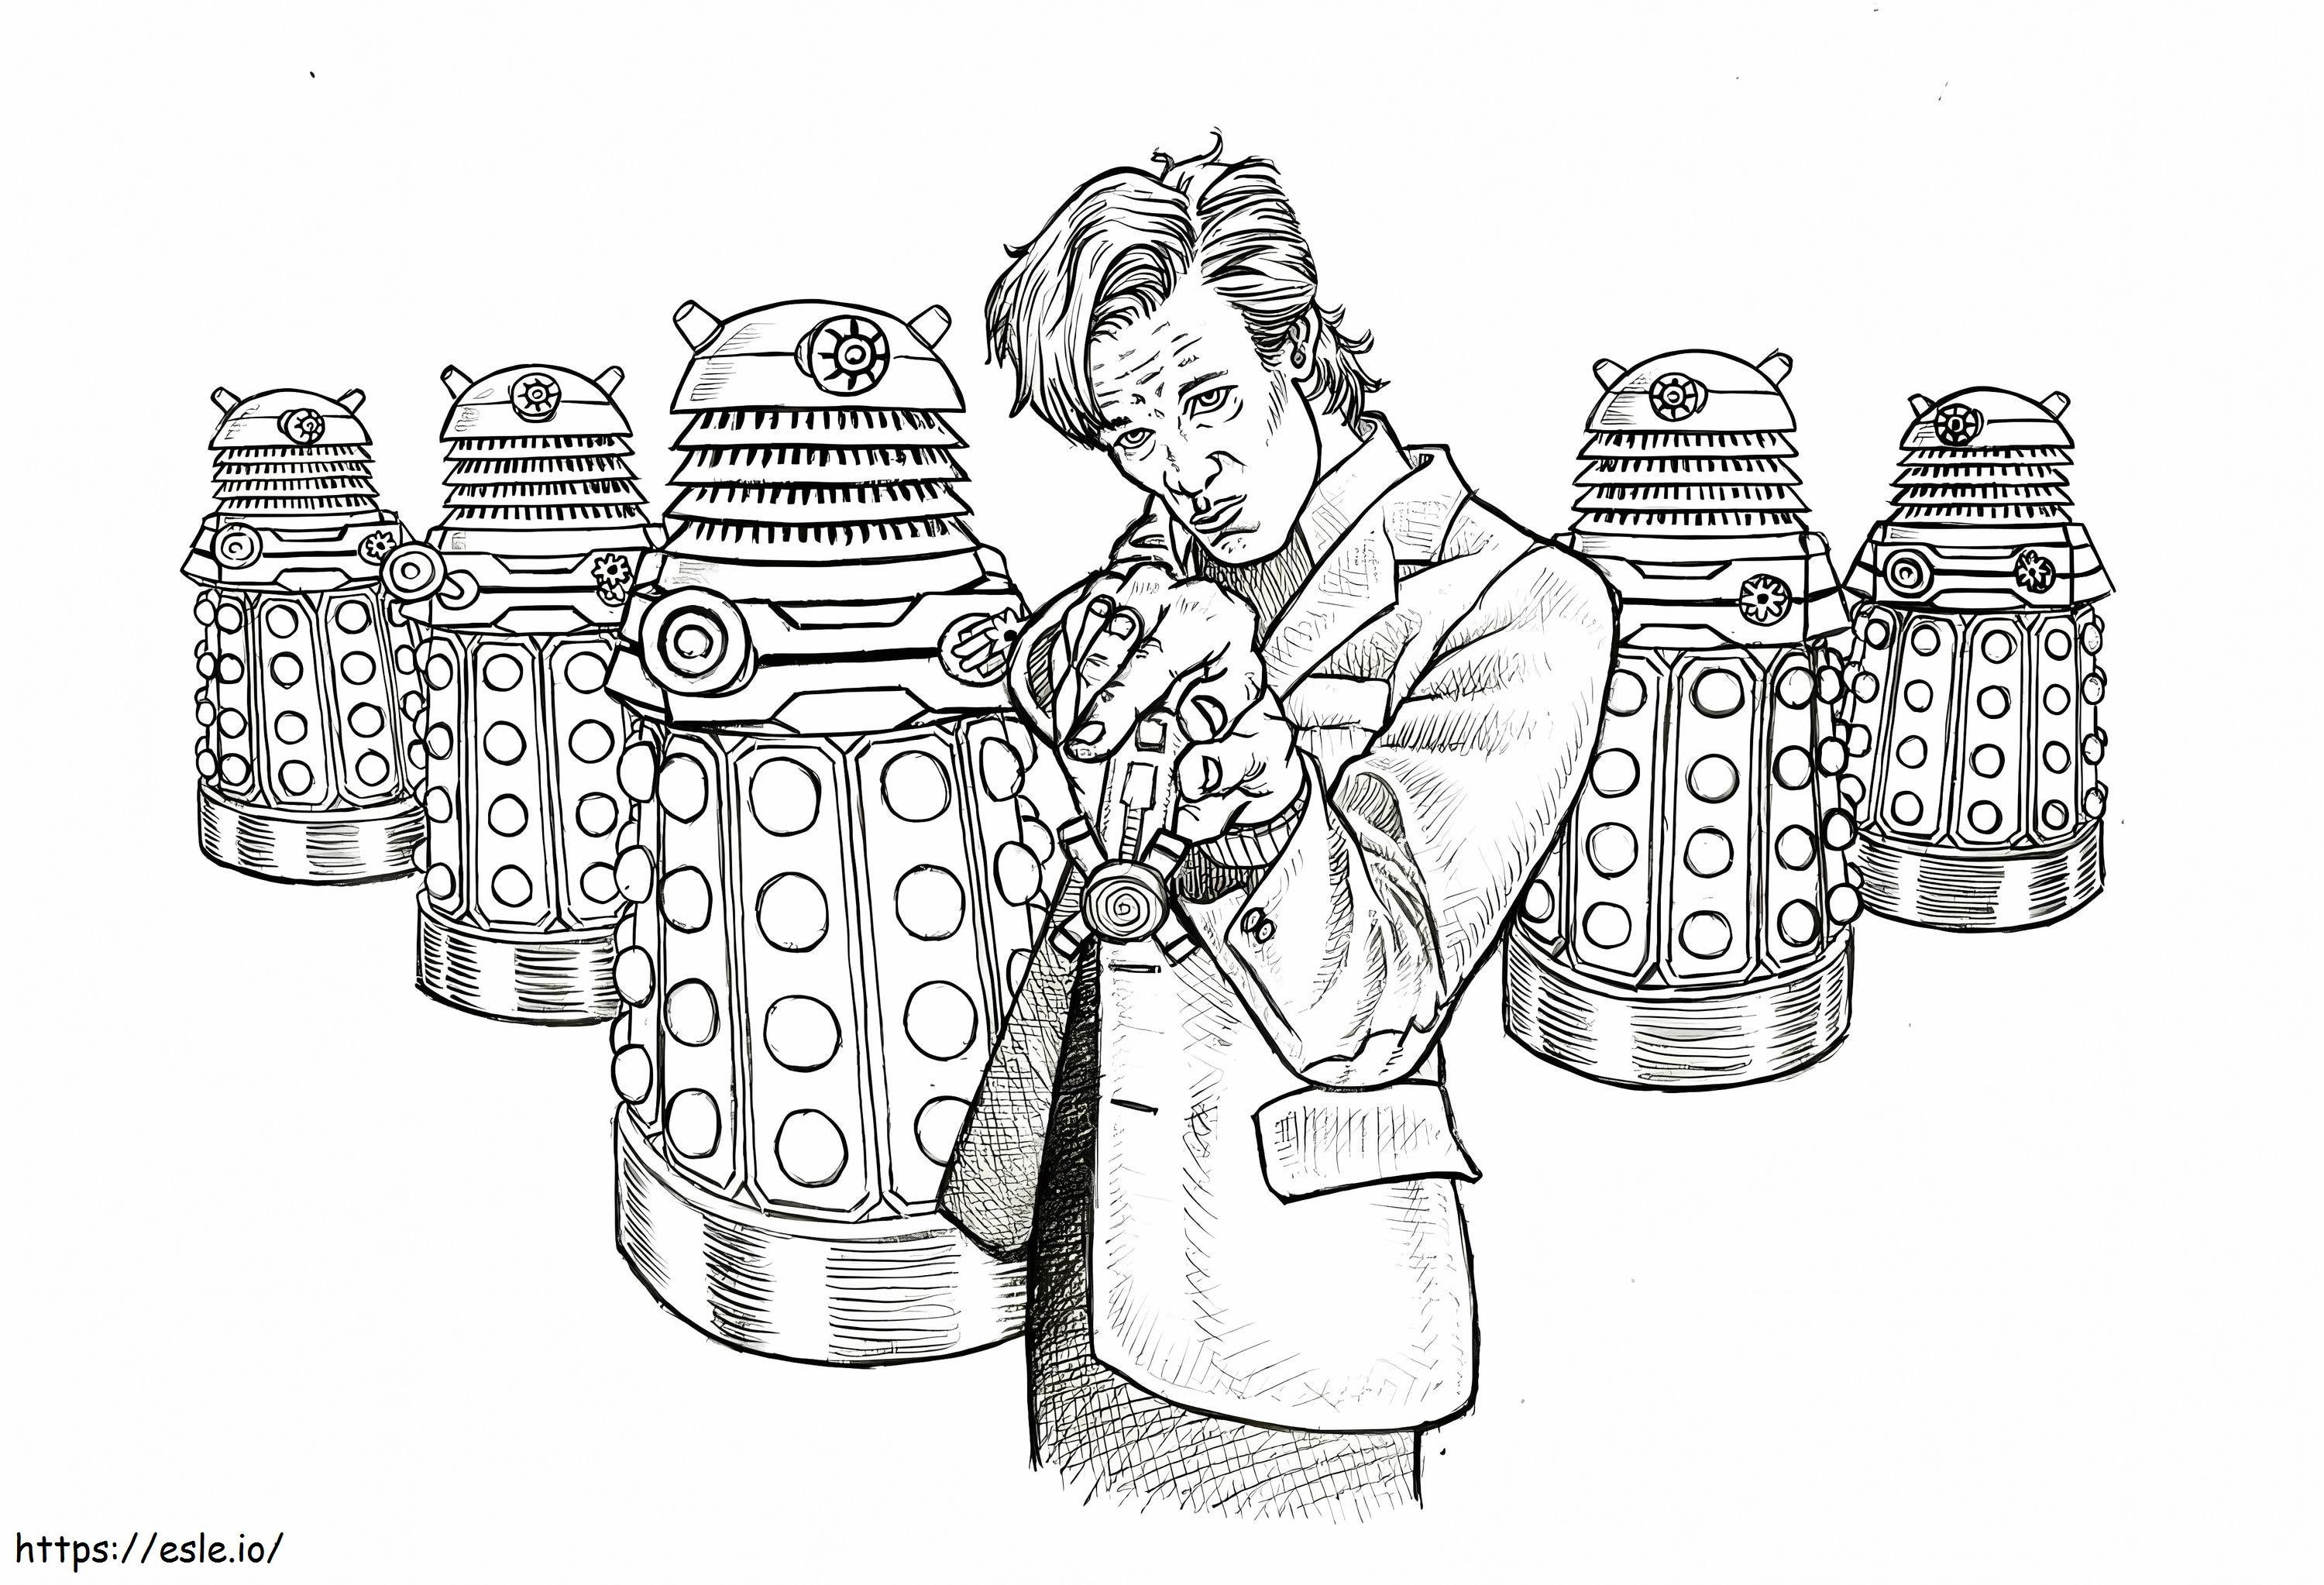 Coloriage Docteur Who 5 à imprimer dessin